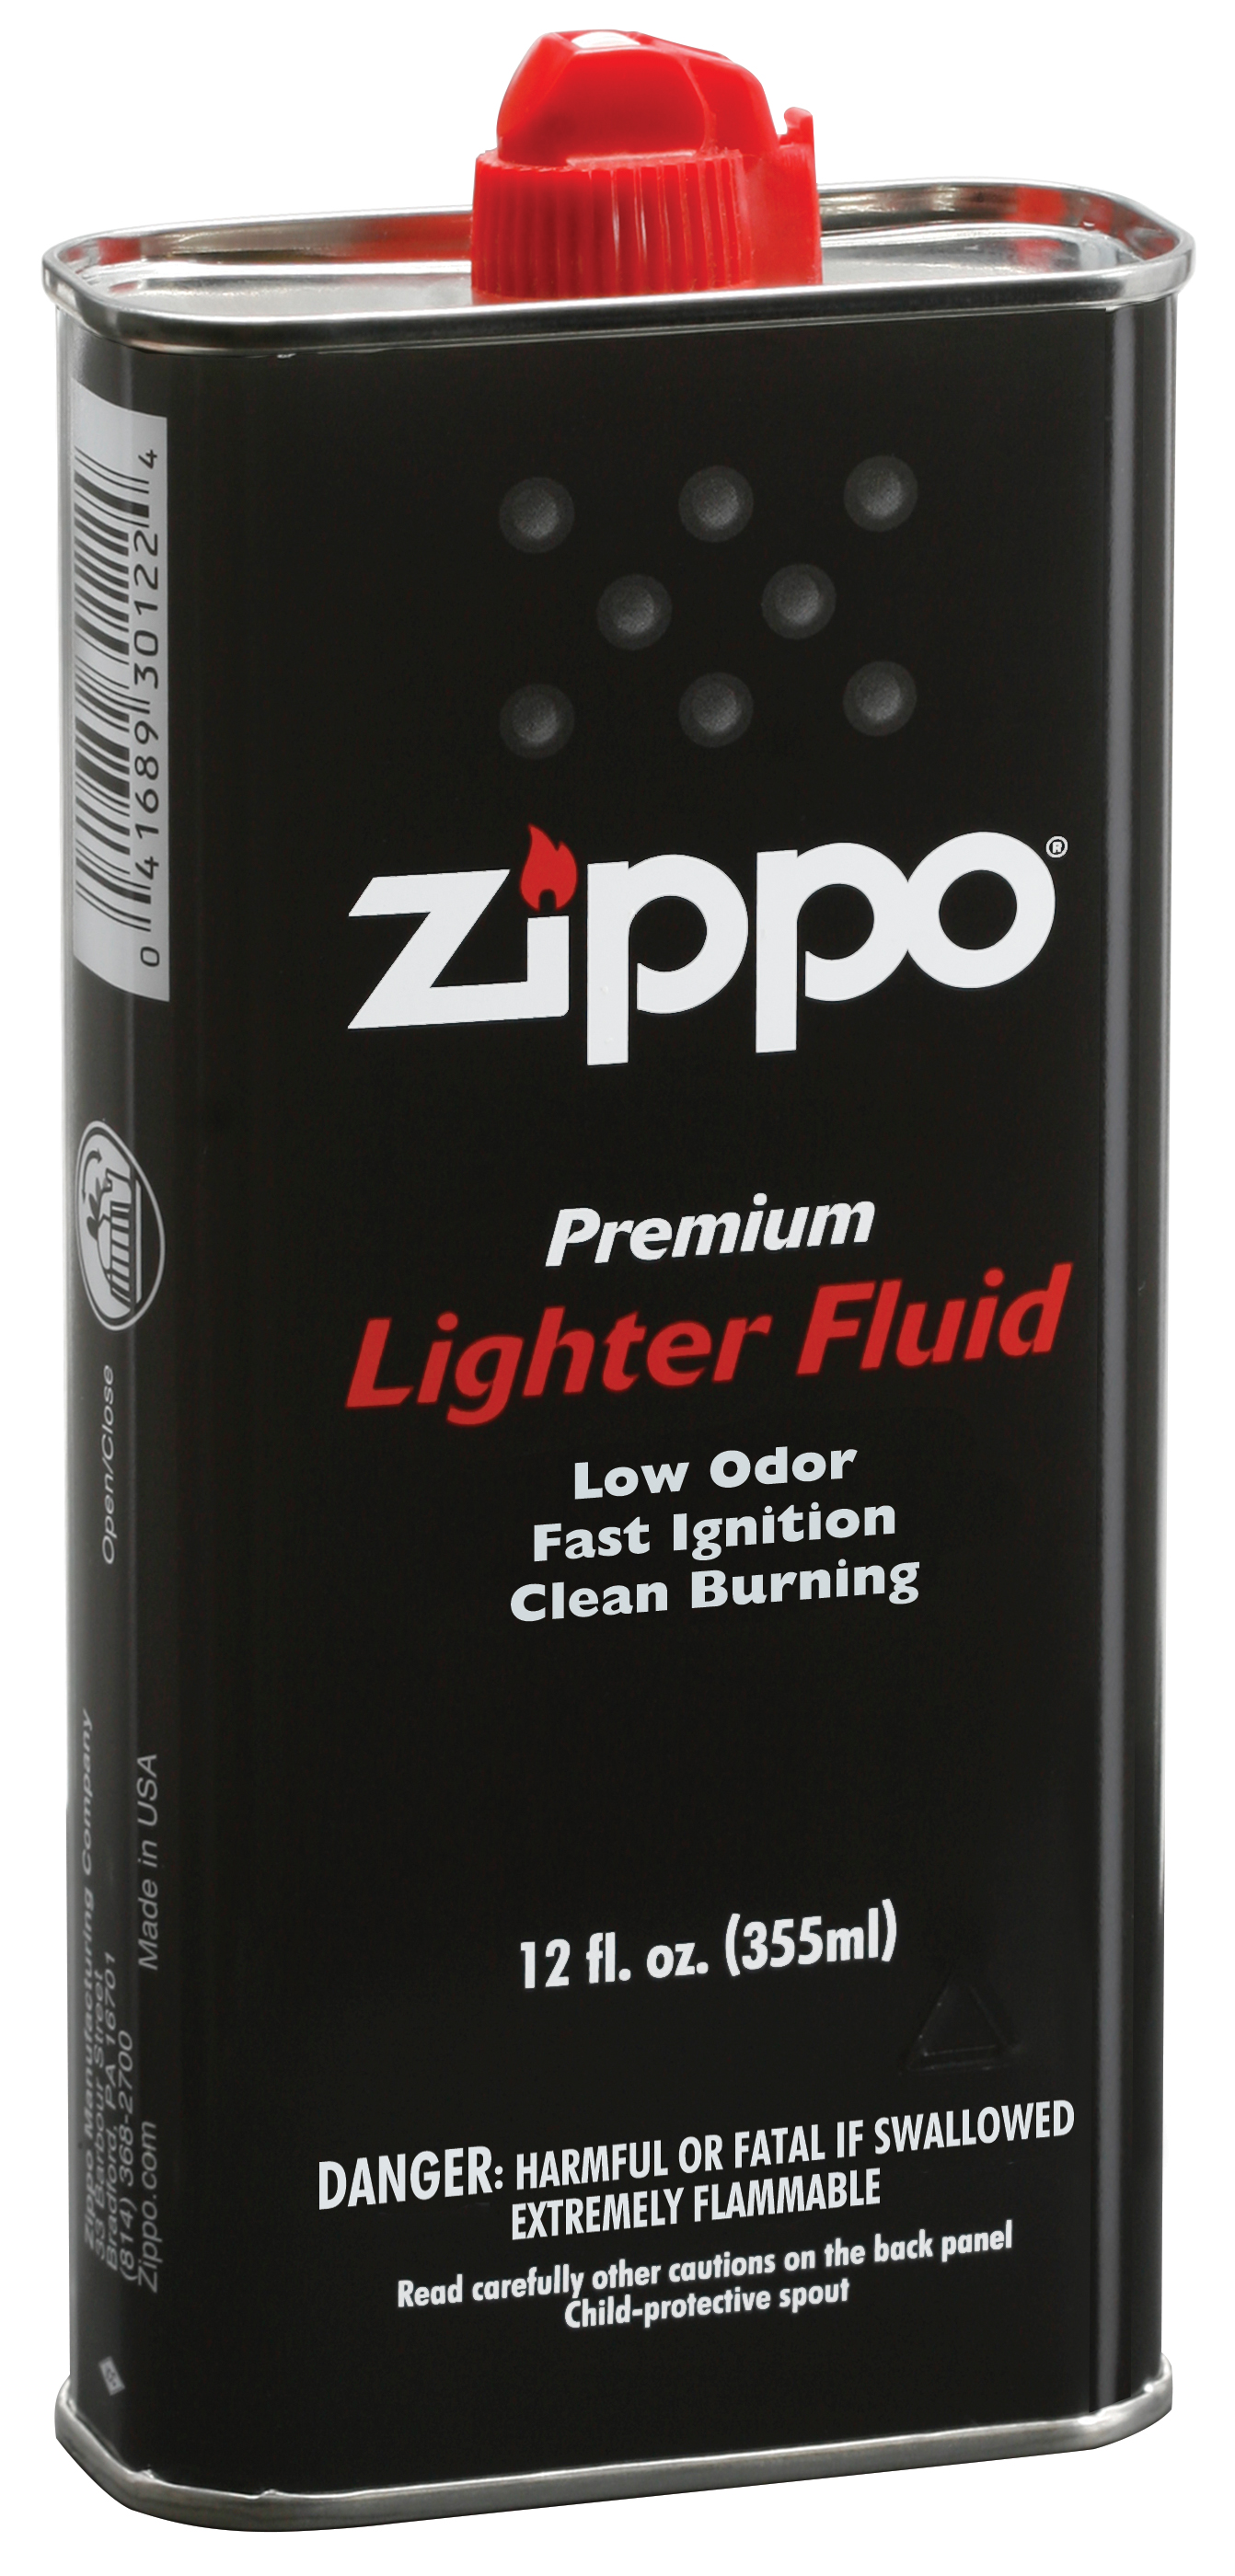 zippo lighter fluid dries up